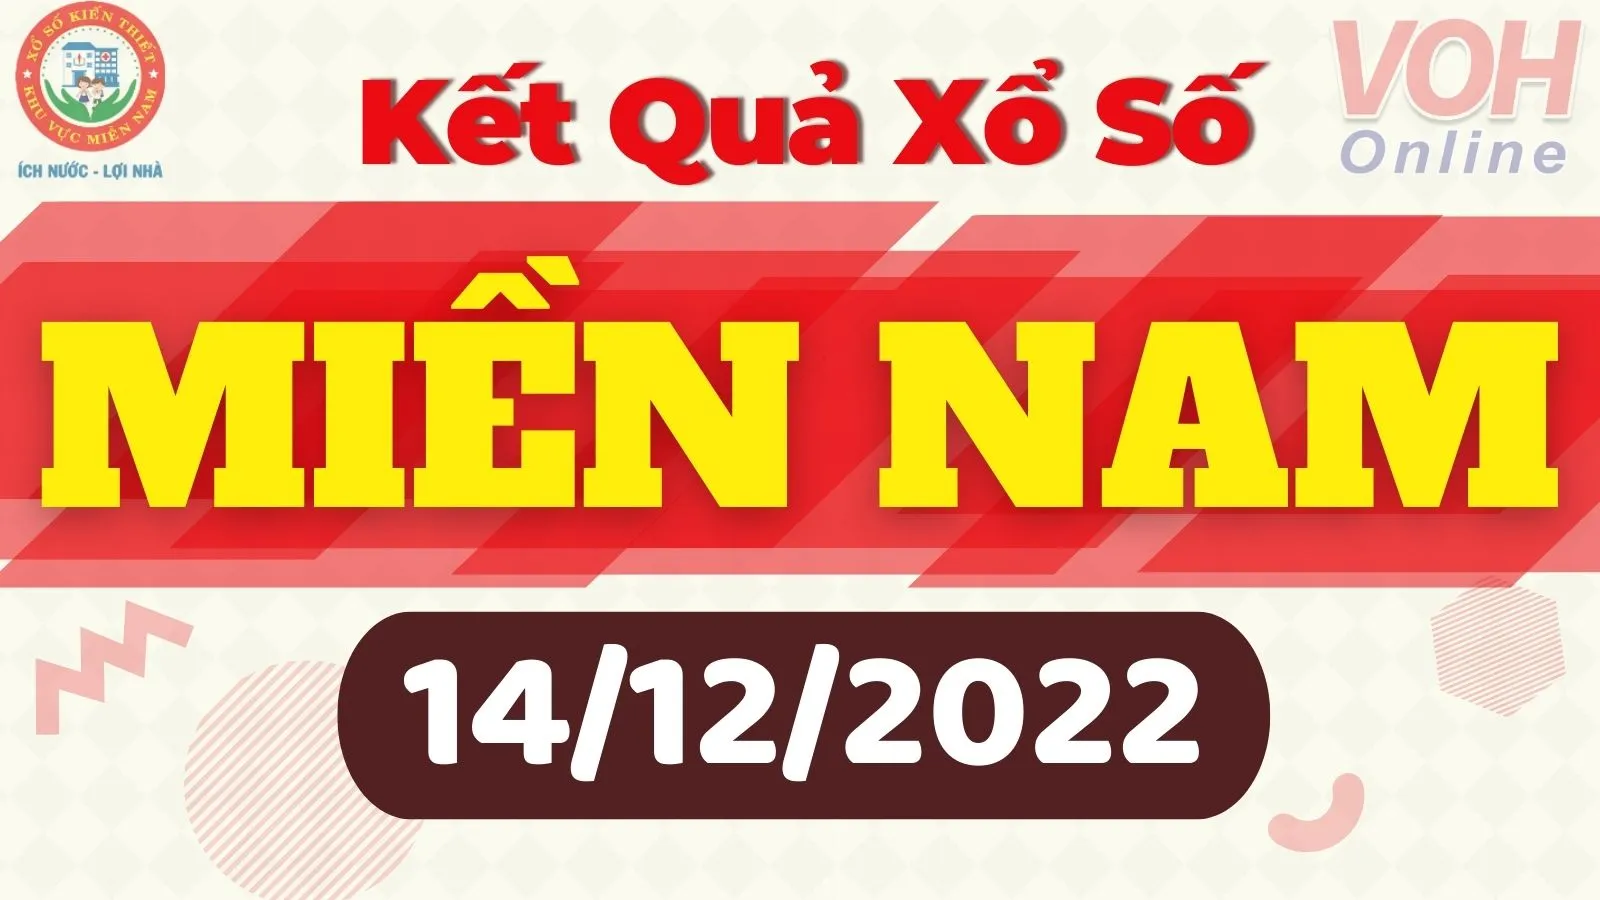 Xổ số miền Nam hôm nay, XSMN 14/12, SXMN 14/12/2022 - Kết quả xổ số ngày 14 tháng 12